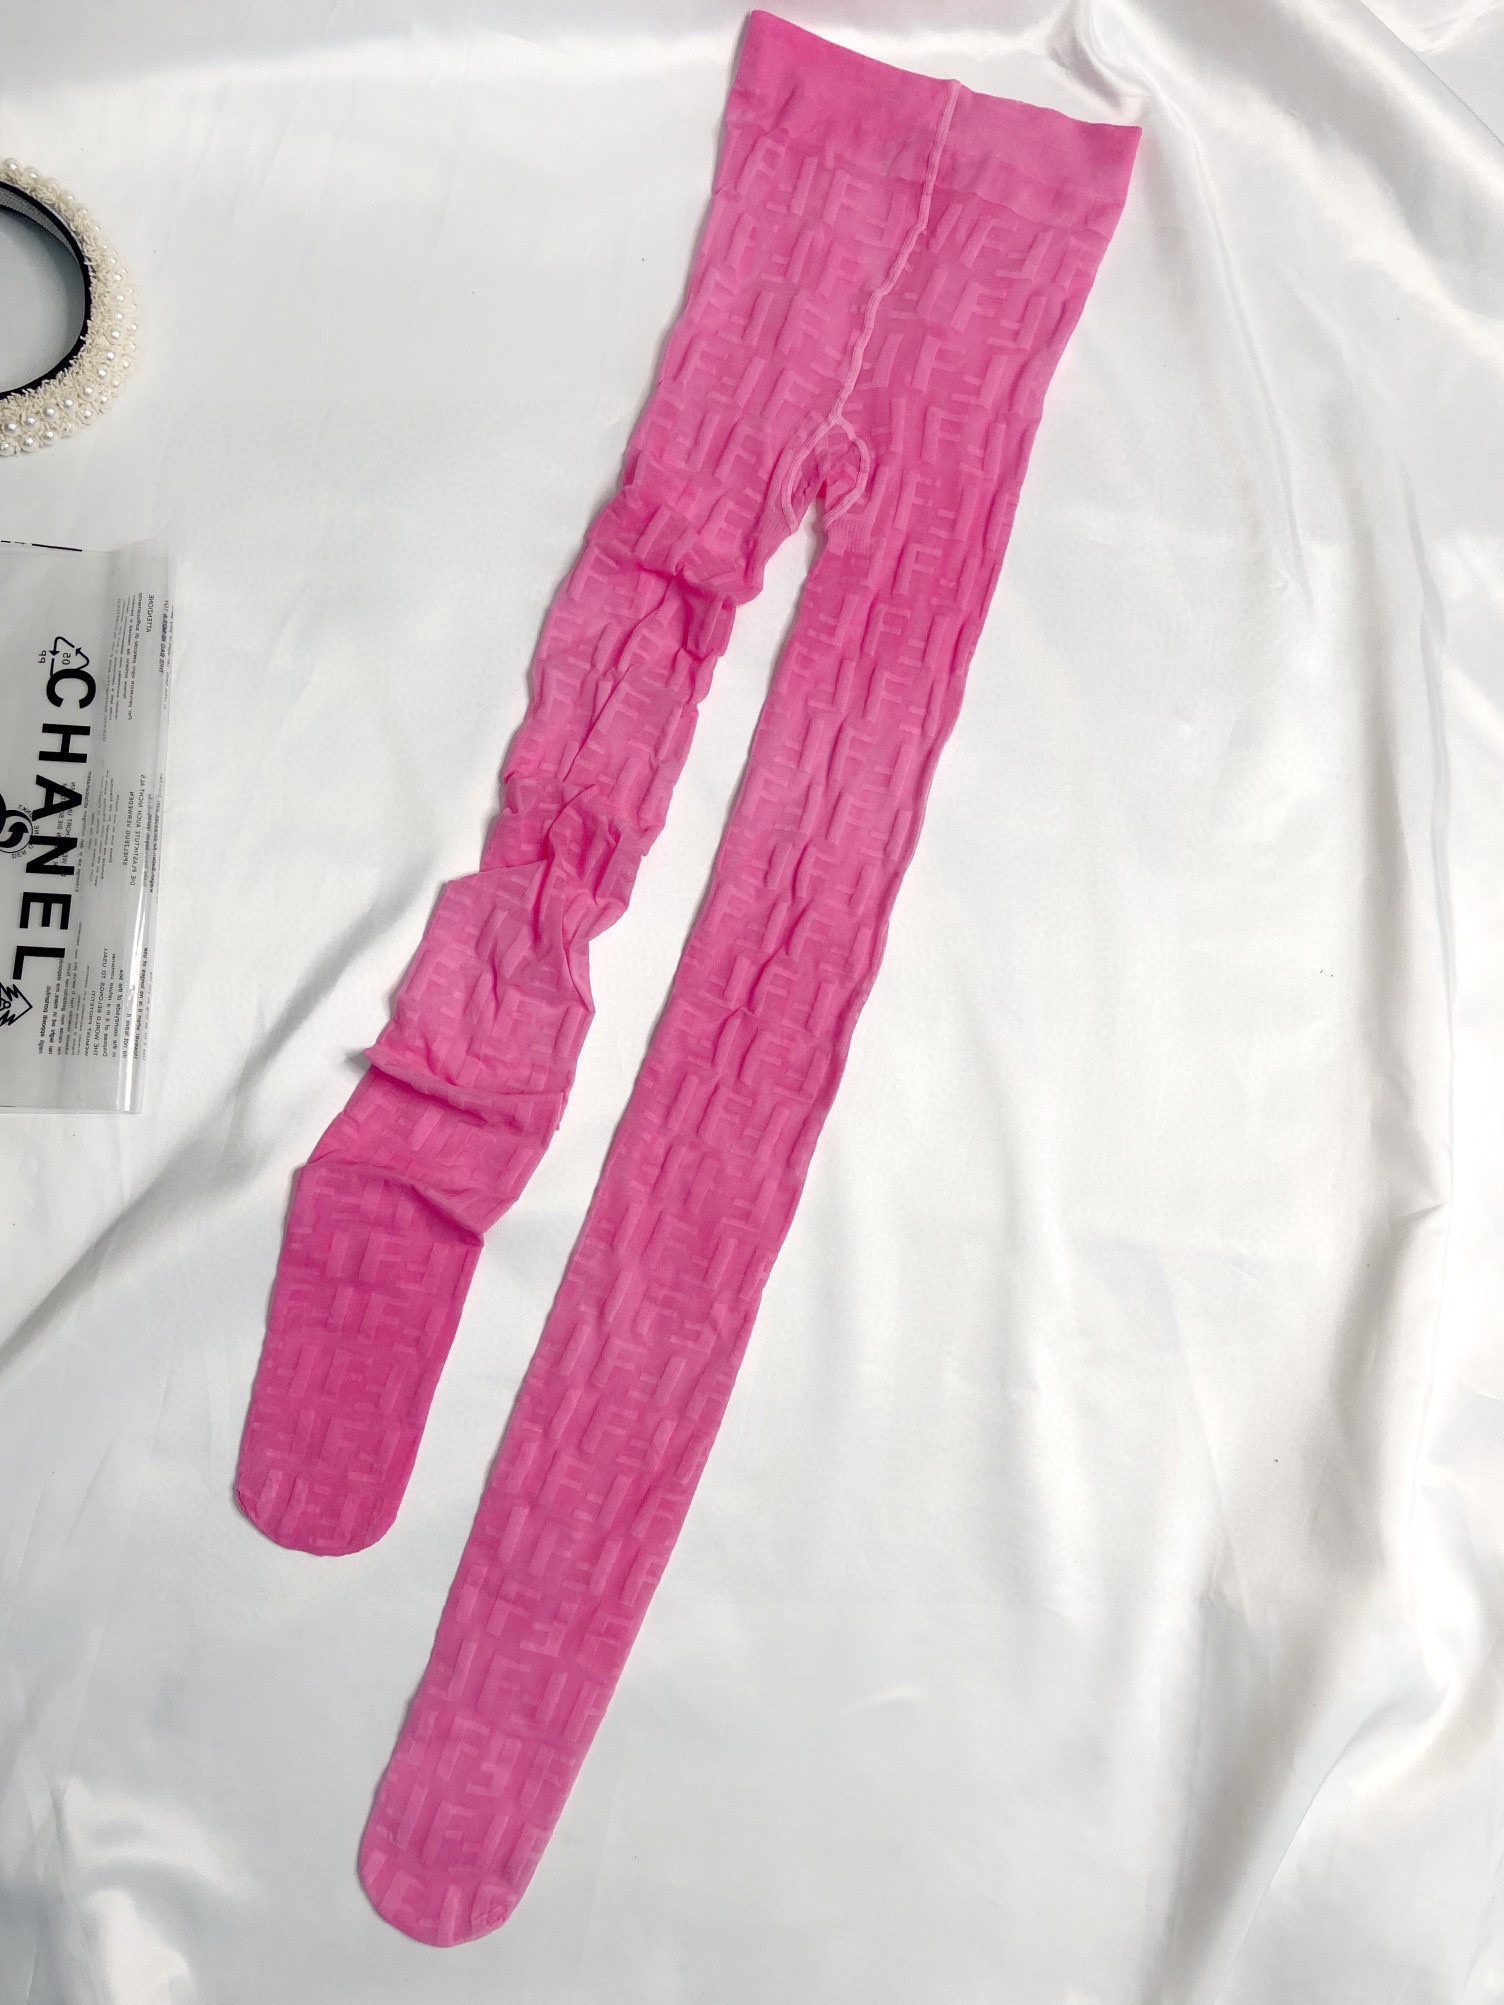 配包装一盒一双FENDI双F经典植绒老花字母丝袜好看到爆炸欧美大牌丝袜一比一高版本制作可以看得到的工艺！